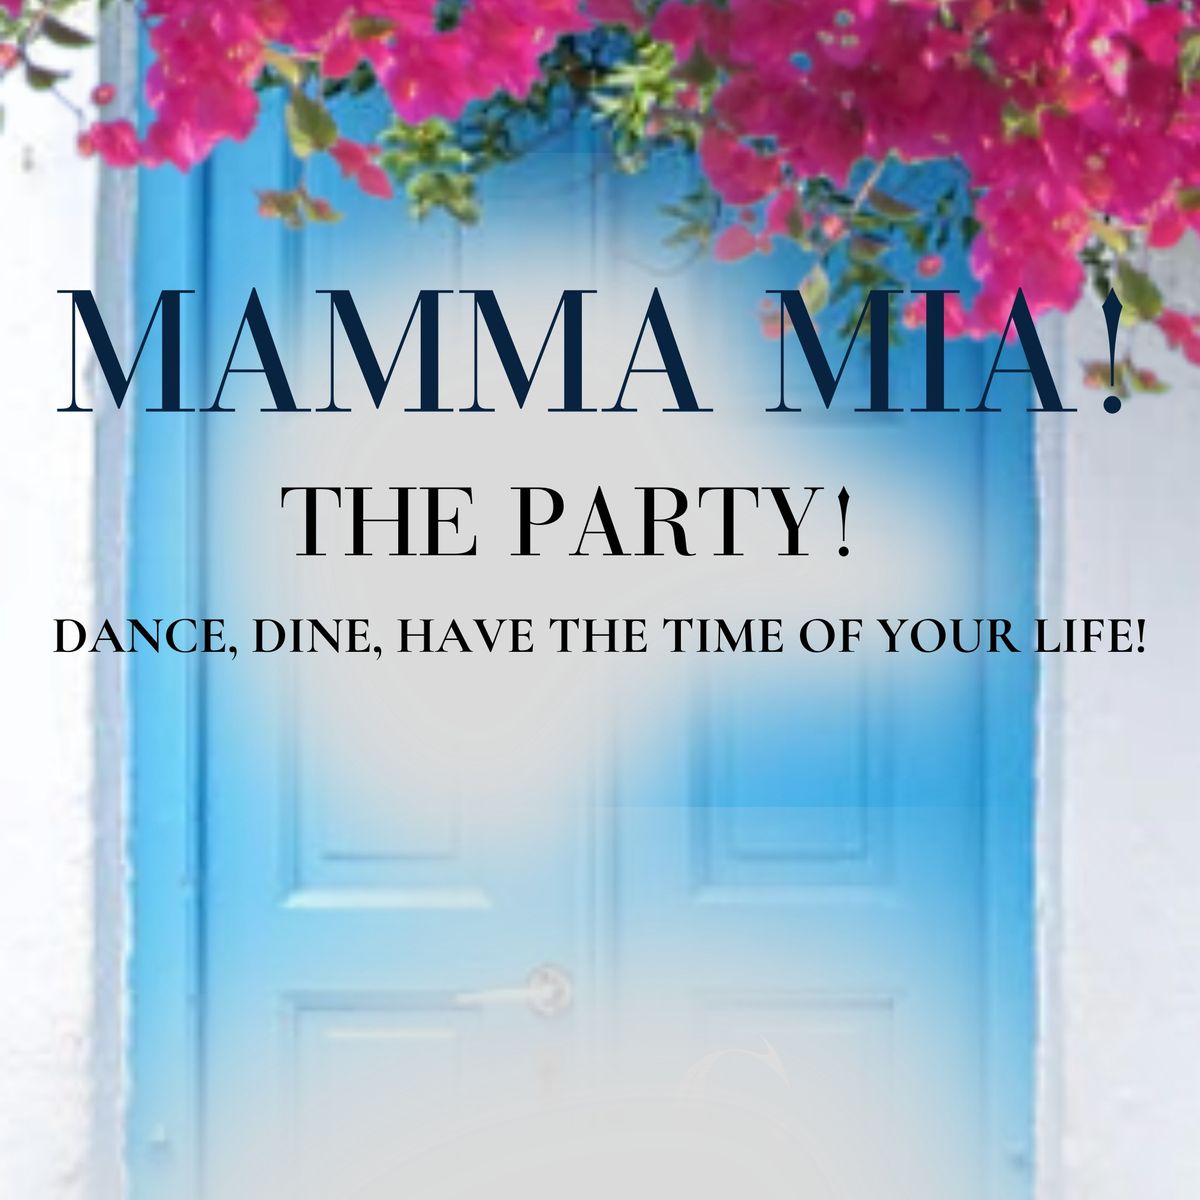 MAMMA MIA! THE PARTY!